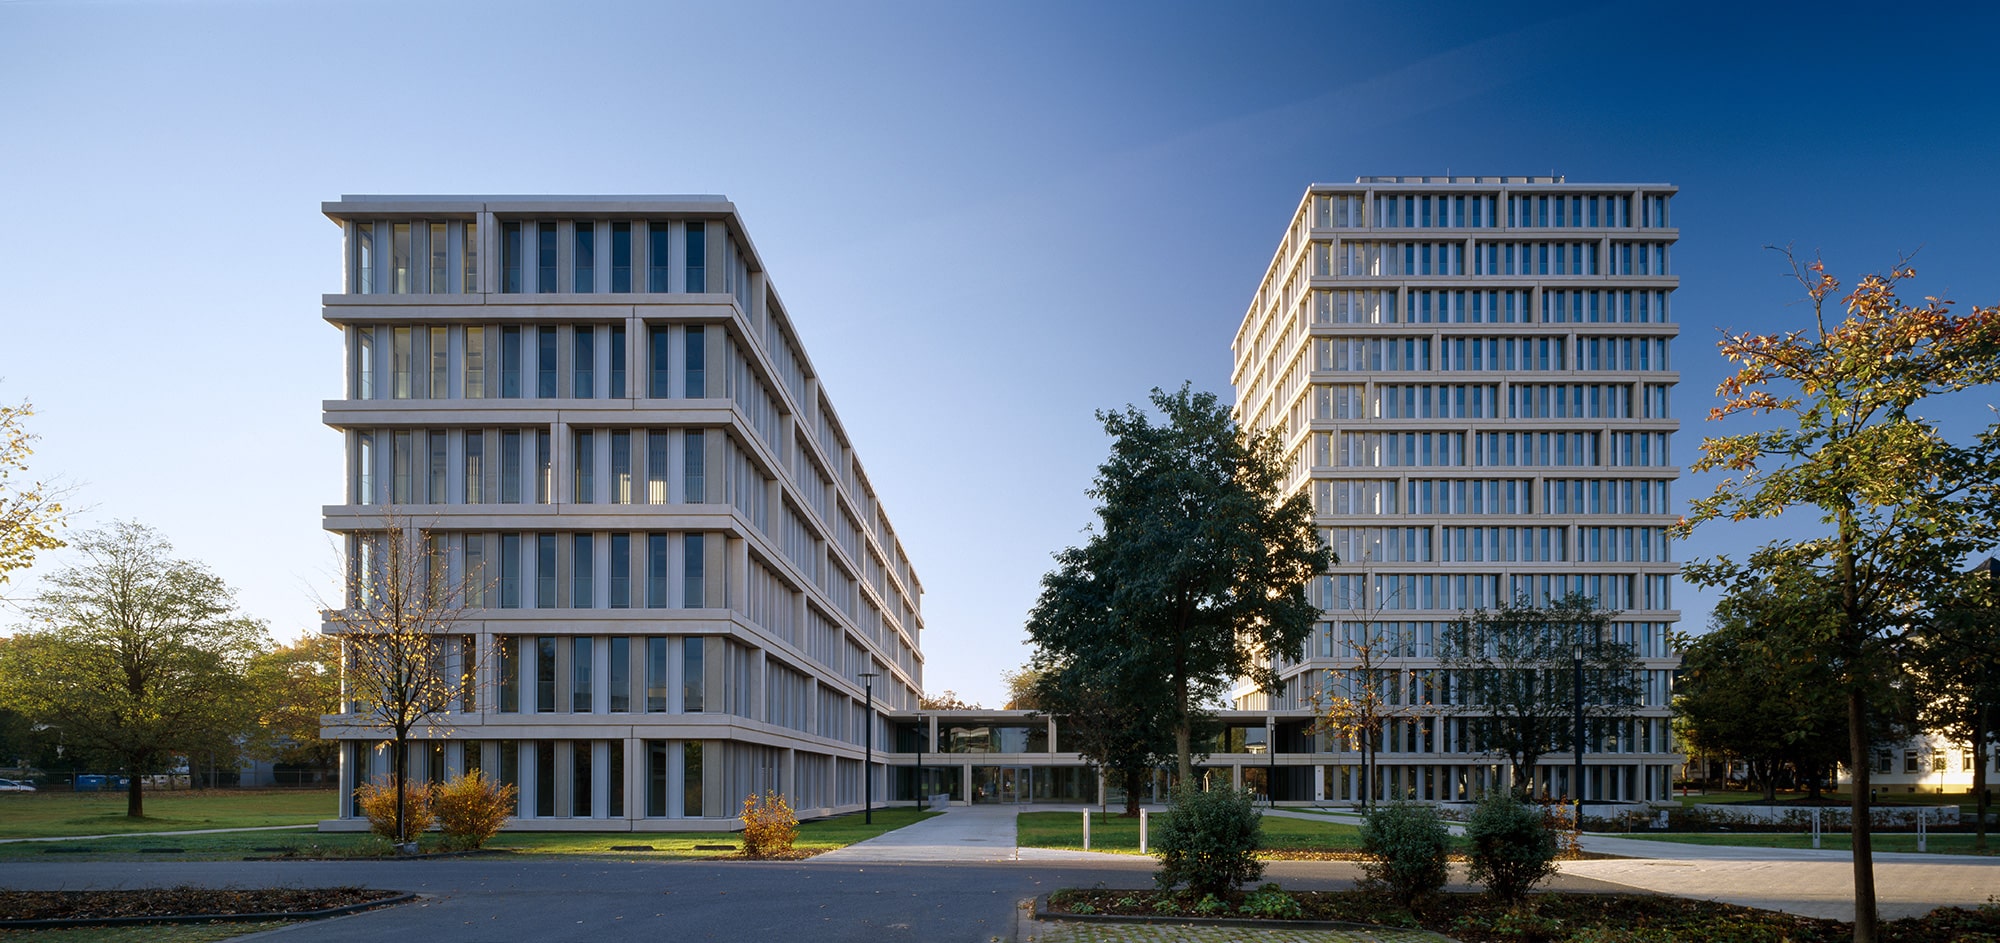 Bundesministerium für Gesundheit, Bonn